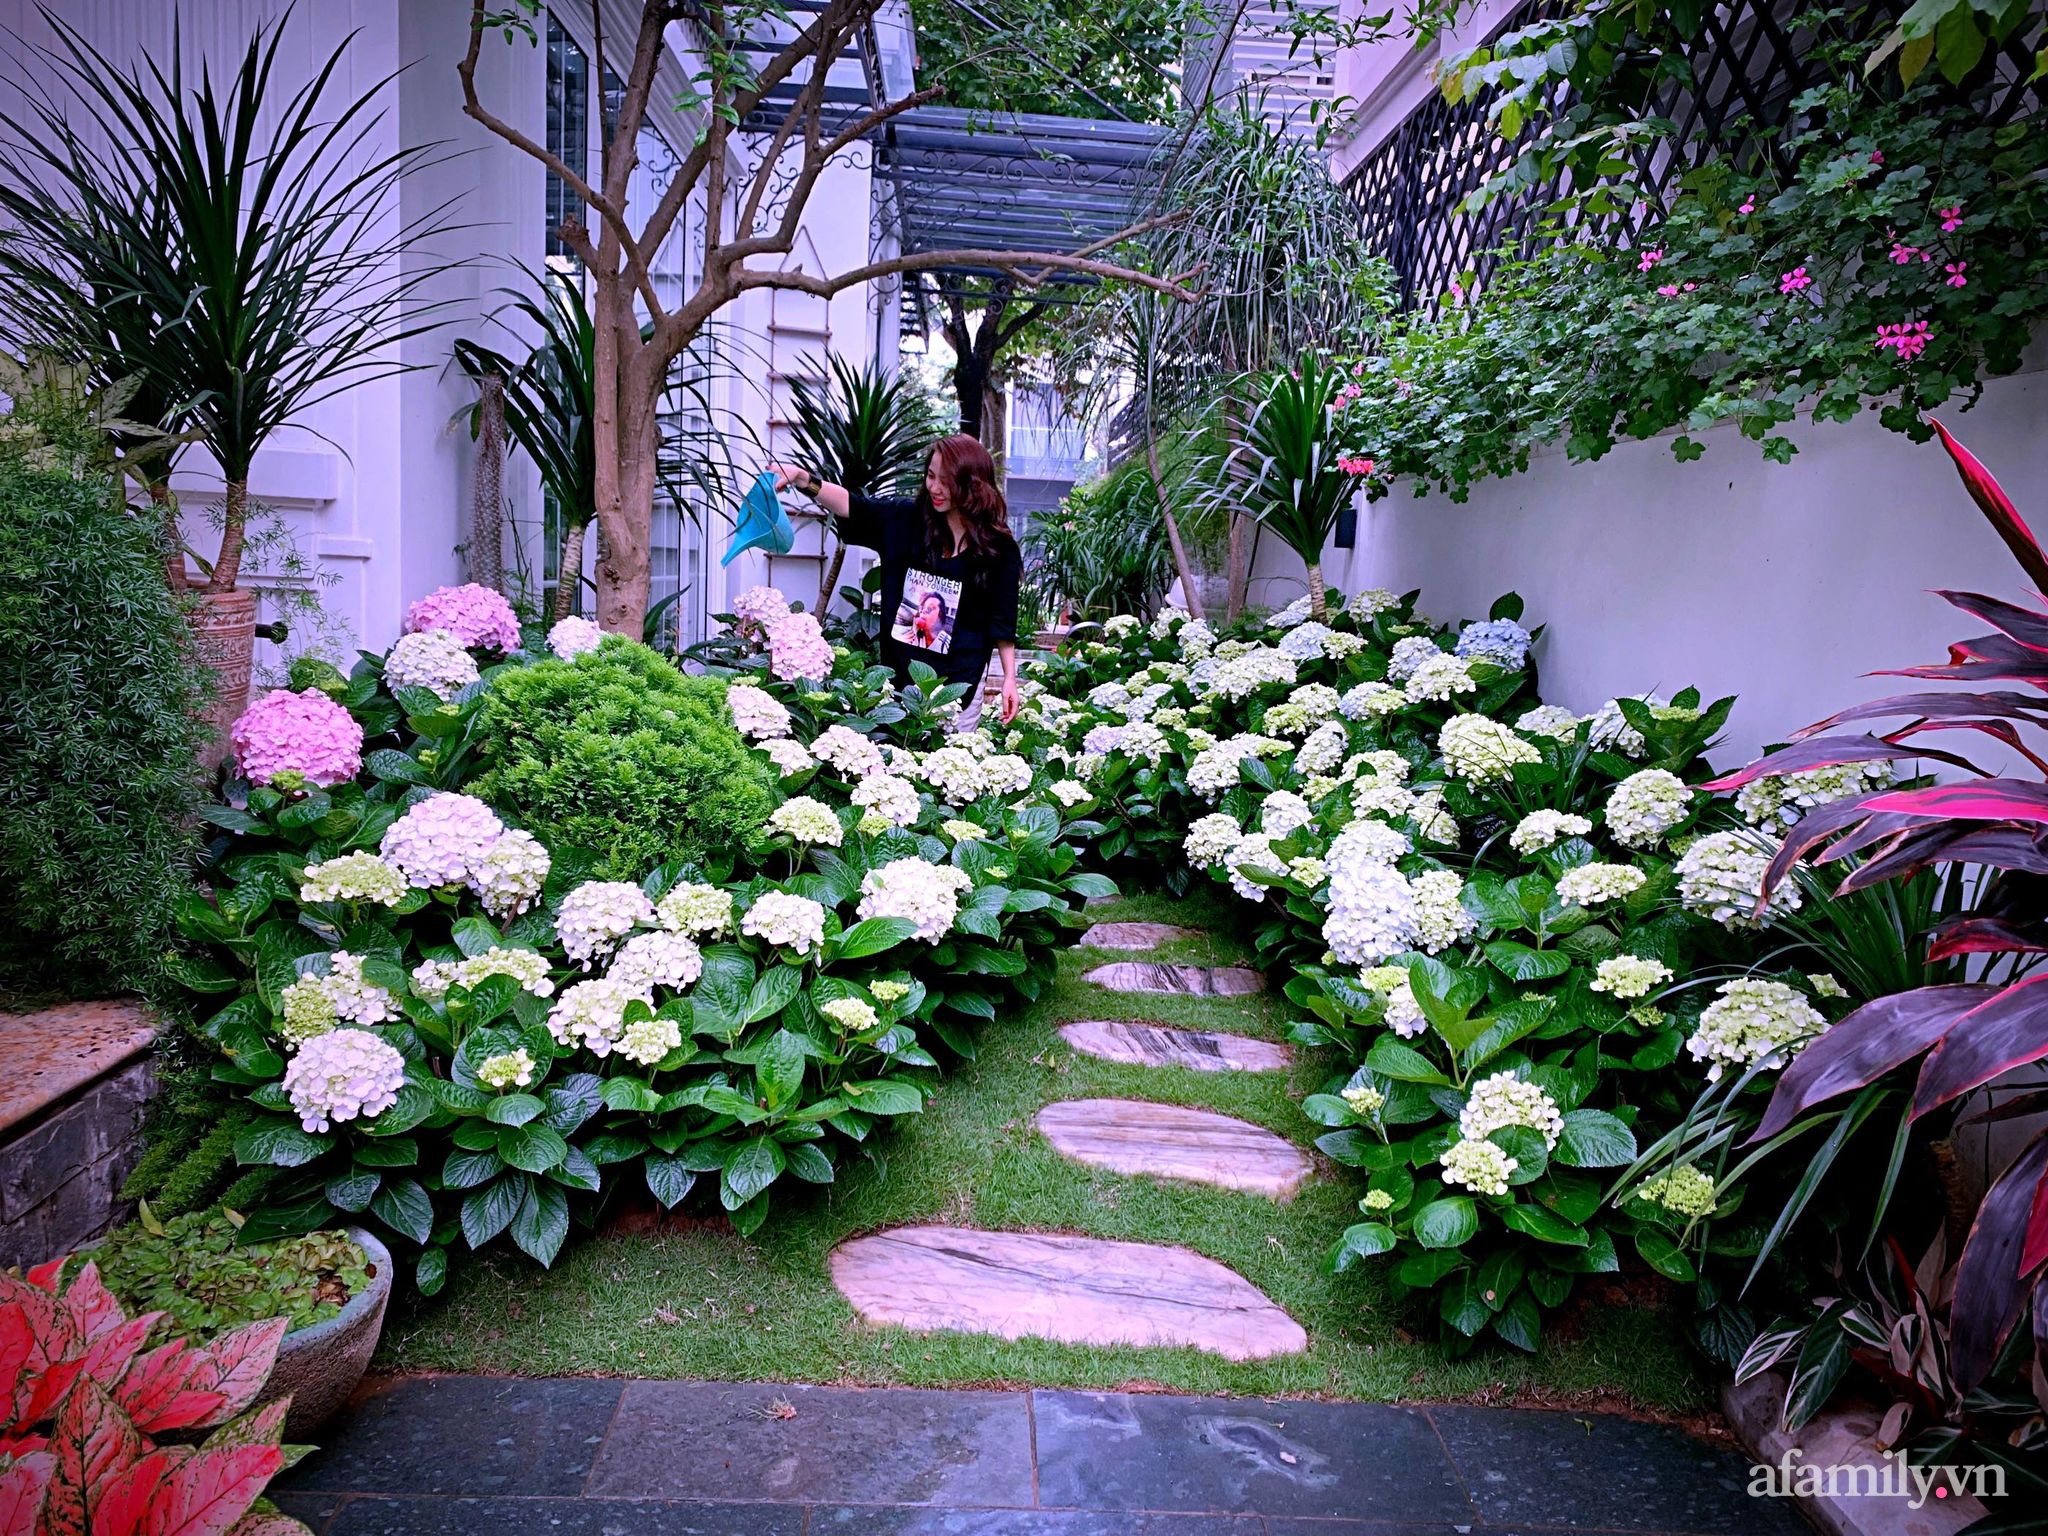 Khu vườn bốn mùa khoe sắc của nữ chủ nhân có nụ cười xinh như hoa ở Hà Nội - Ảnh 1.